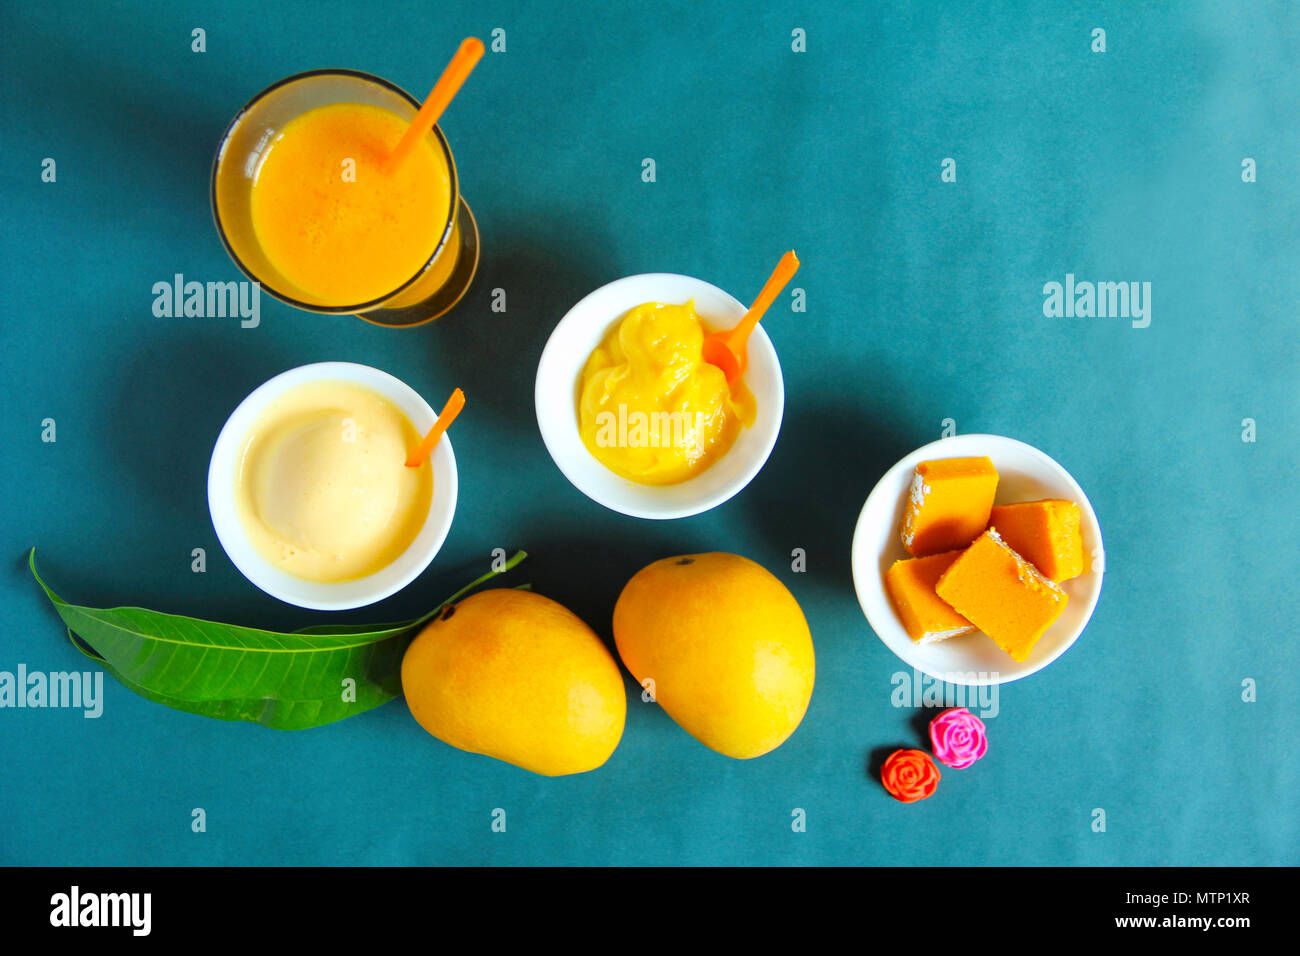 Vista dall'alto che mostra alphonso mango e i suoi sottoprodotti come il dolce, gelati e agitare Foto Stock